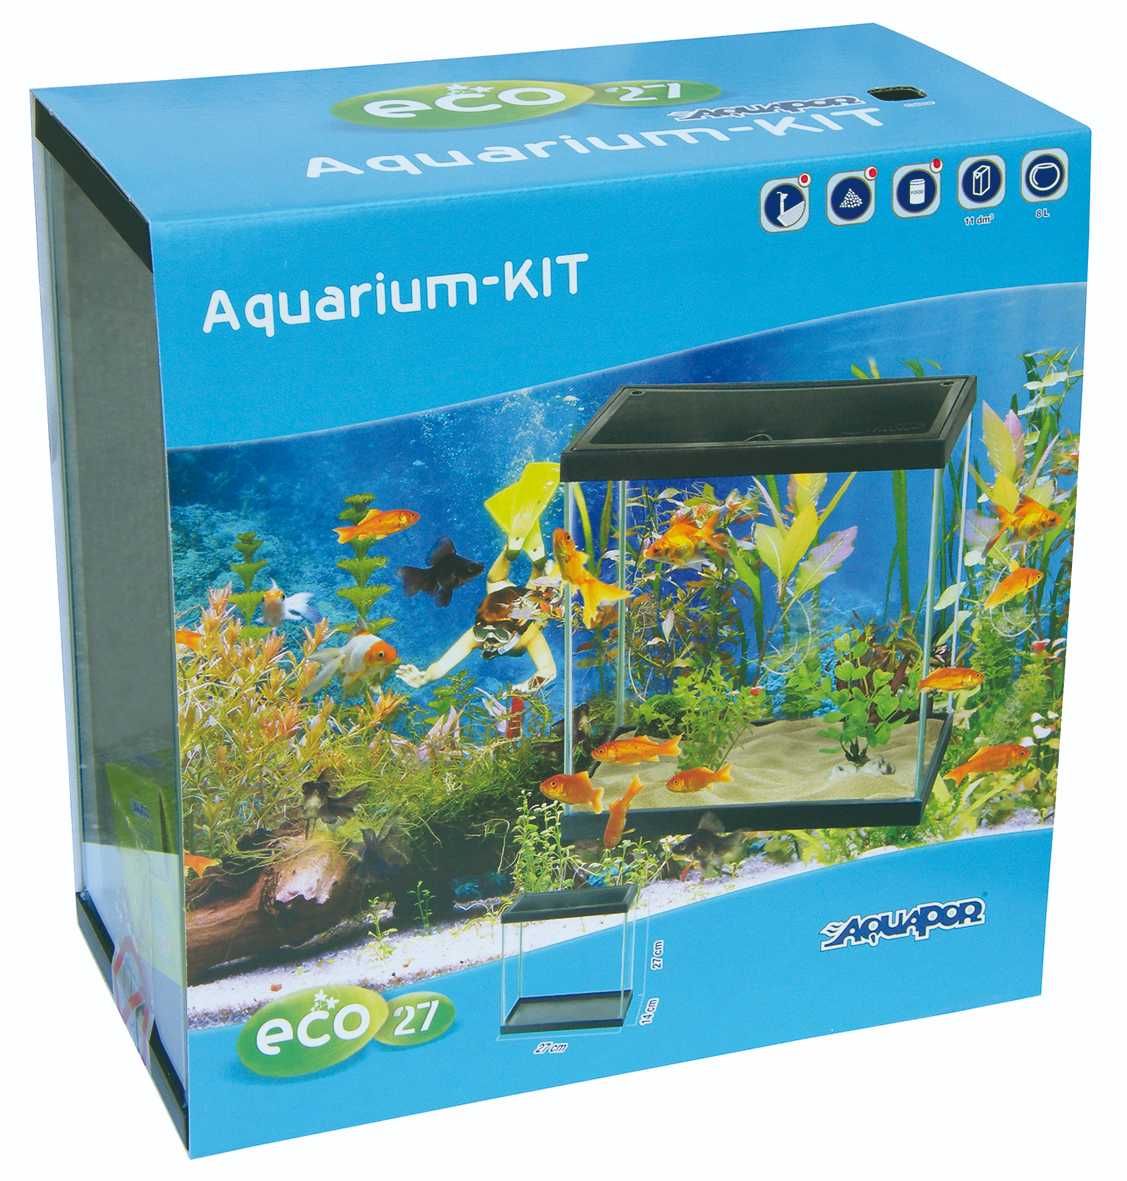 NOVO - Kit Completo de Aquário ECO, aquarium